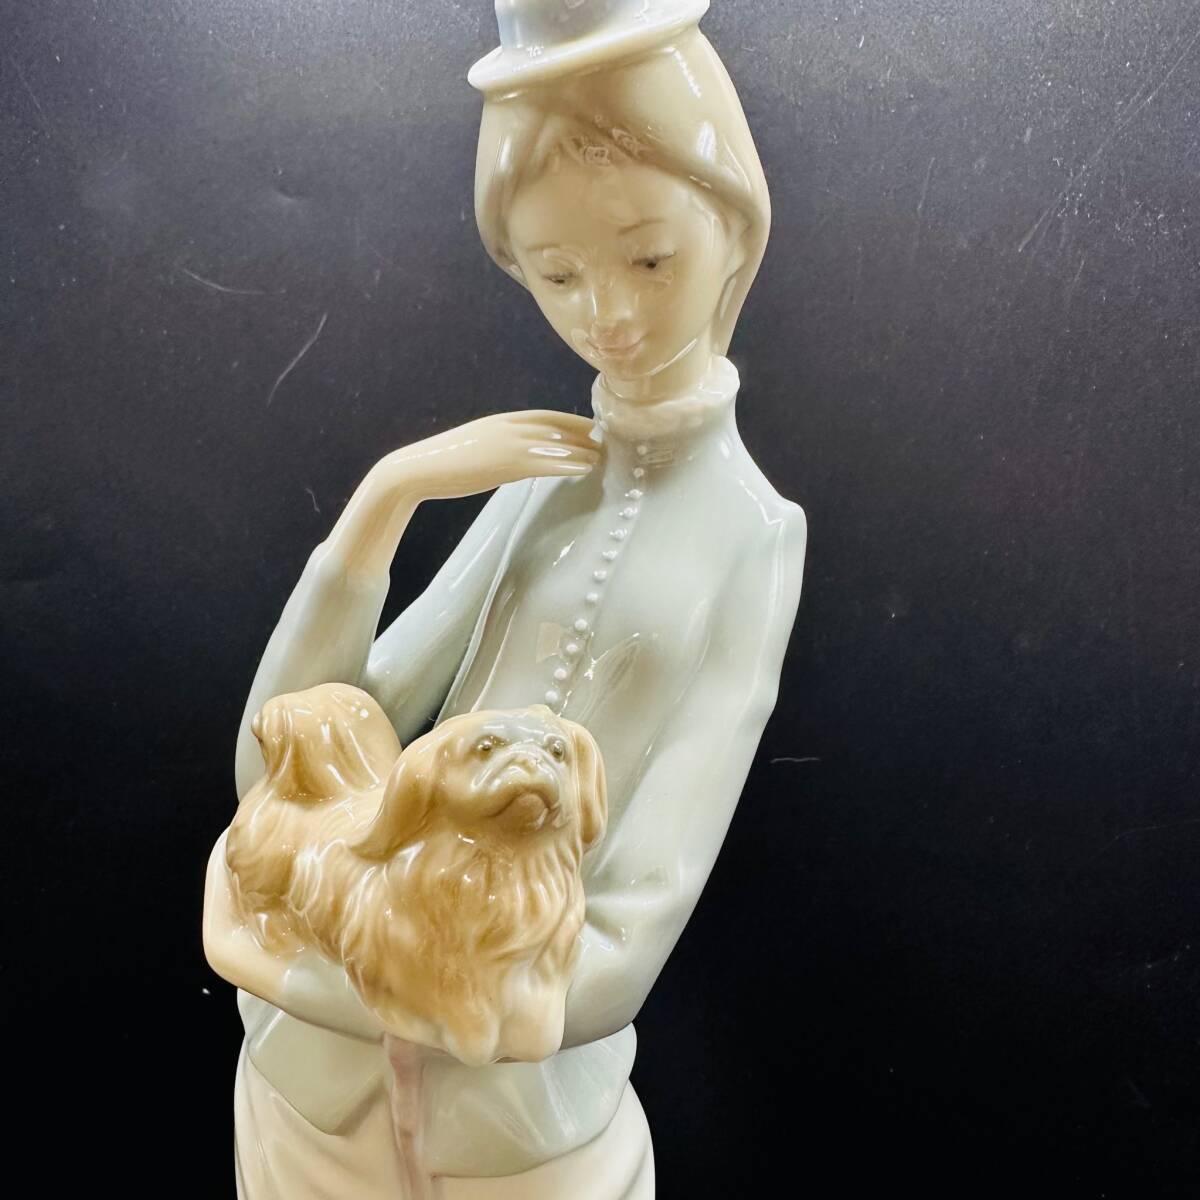  Lladro собака .... женщина figyu Lynn керамика кукла украшение собака зонт высота : примерно 13cm LLADRO ручная работа Испания 1 иен лот текущее состояние товар Vintage 